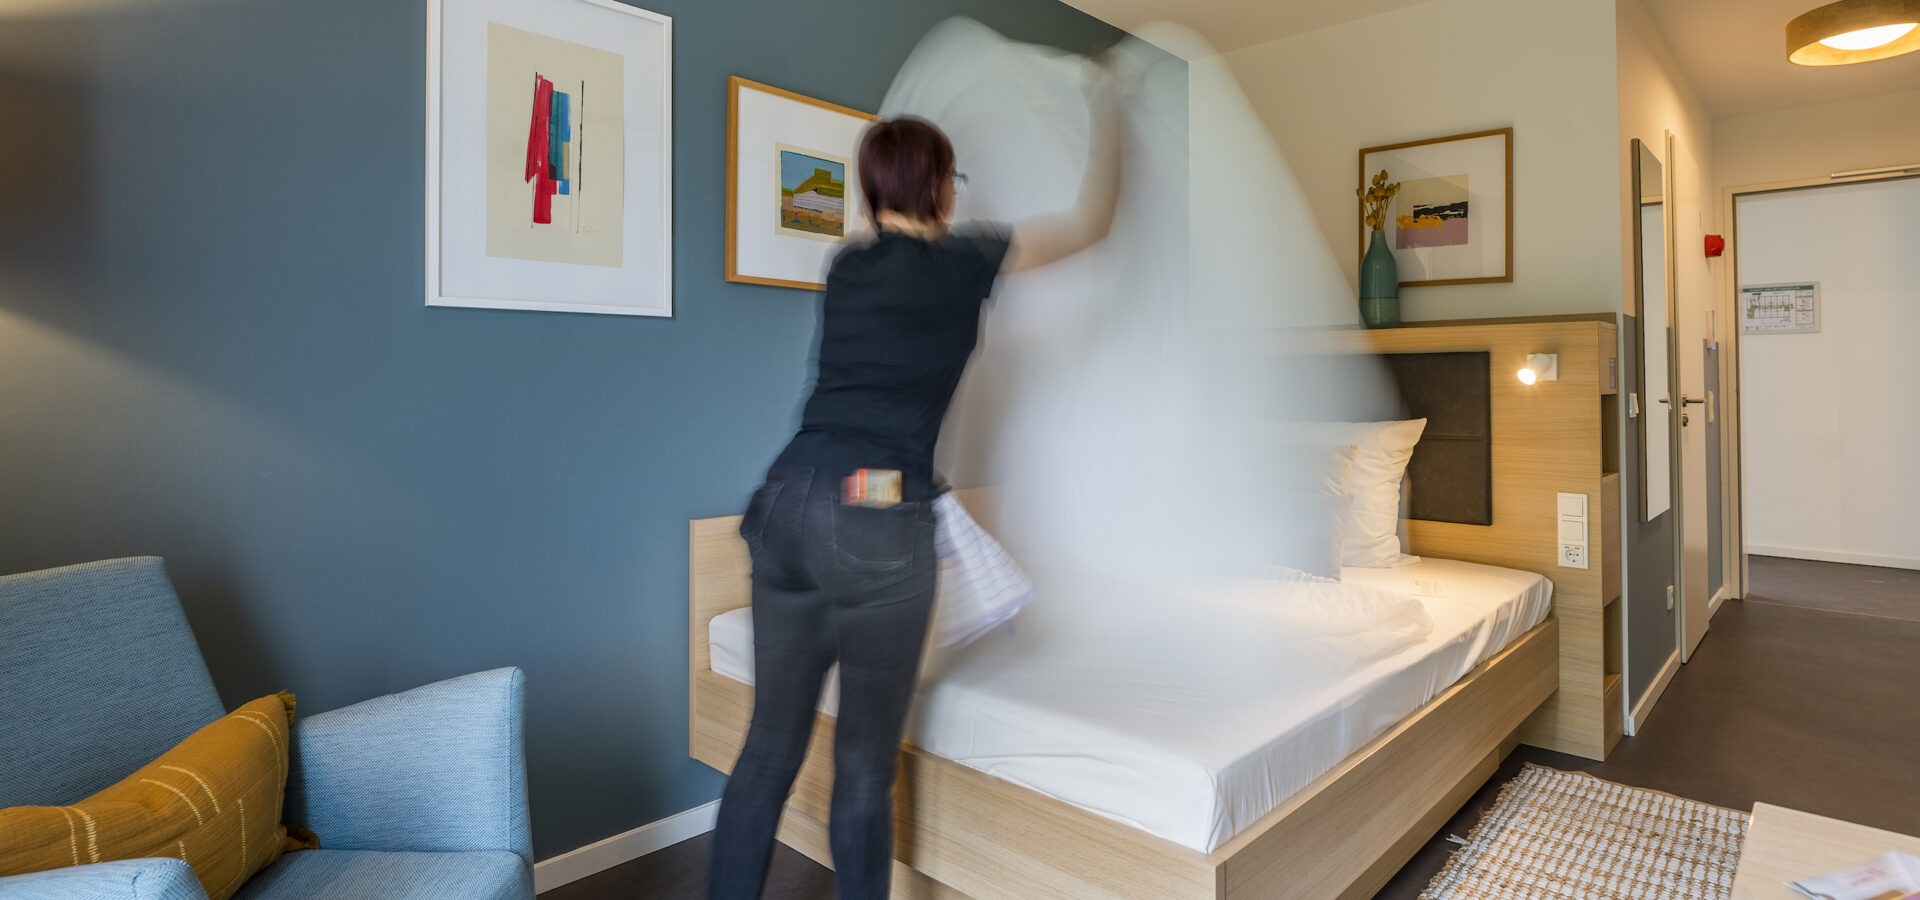 Bett wird im Hotelzimmer gemacht